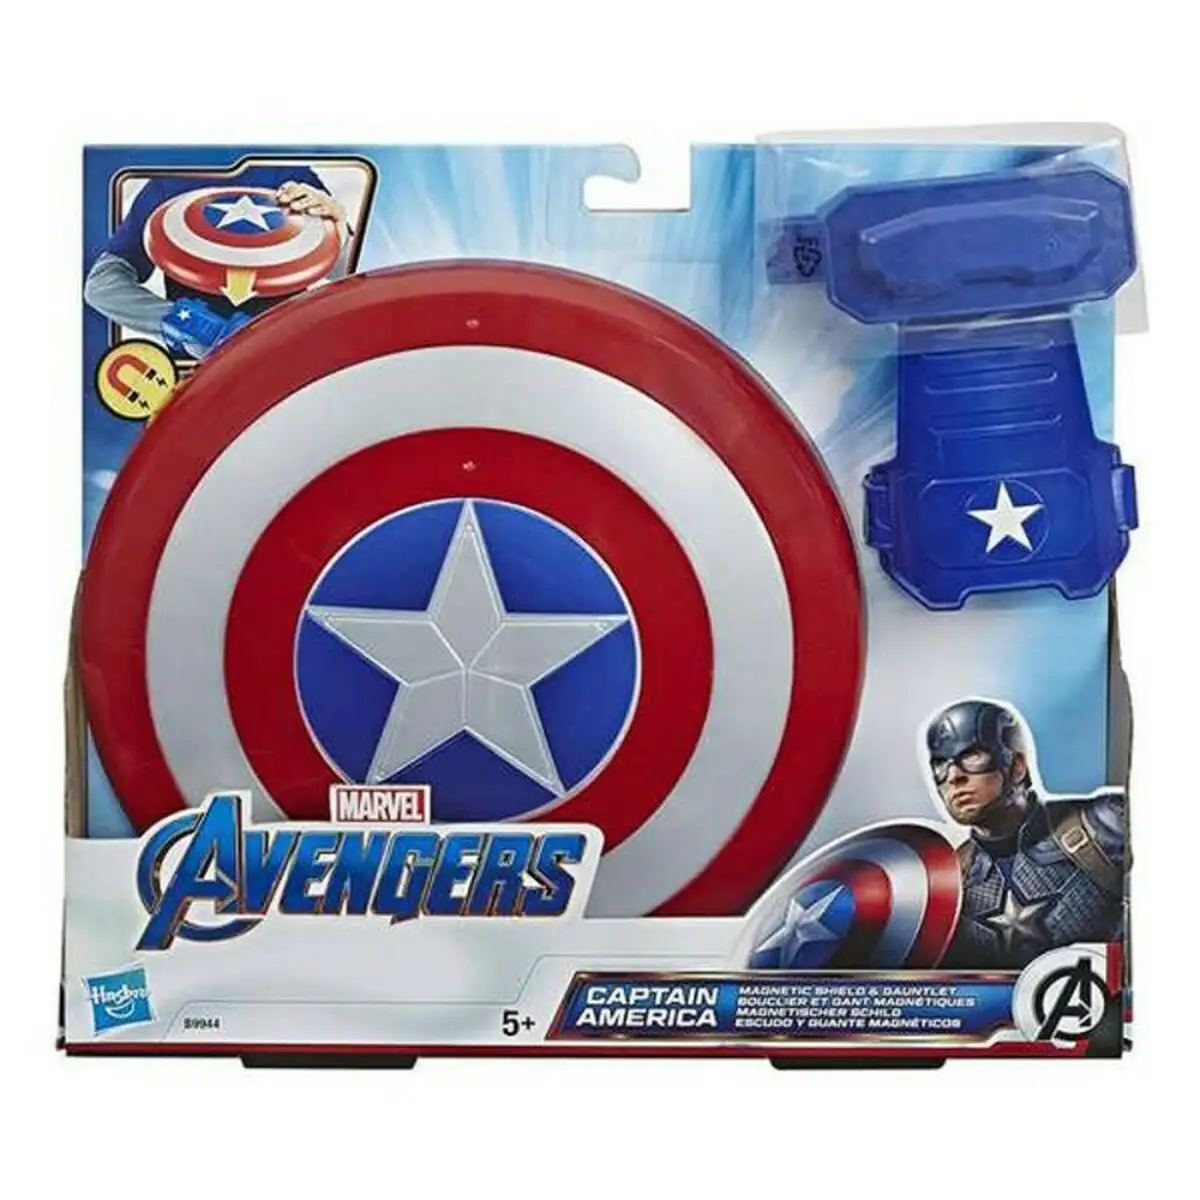 Avengers bouclier magnetique captain america the avengers b9944eu8_2382. Découvrez DIAYTAR SENEGAL - Là où Votre Shopping Prend Vie. Plongez dans notre vaste sélection et trouvez des produits qui ajoutent une touche spéciale à votre quotidien.